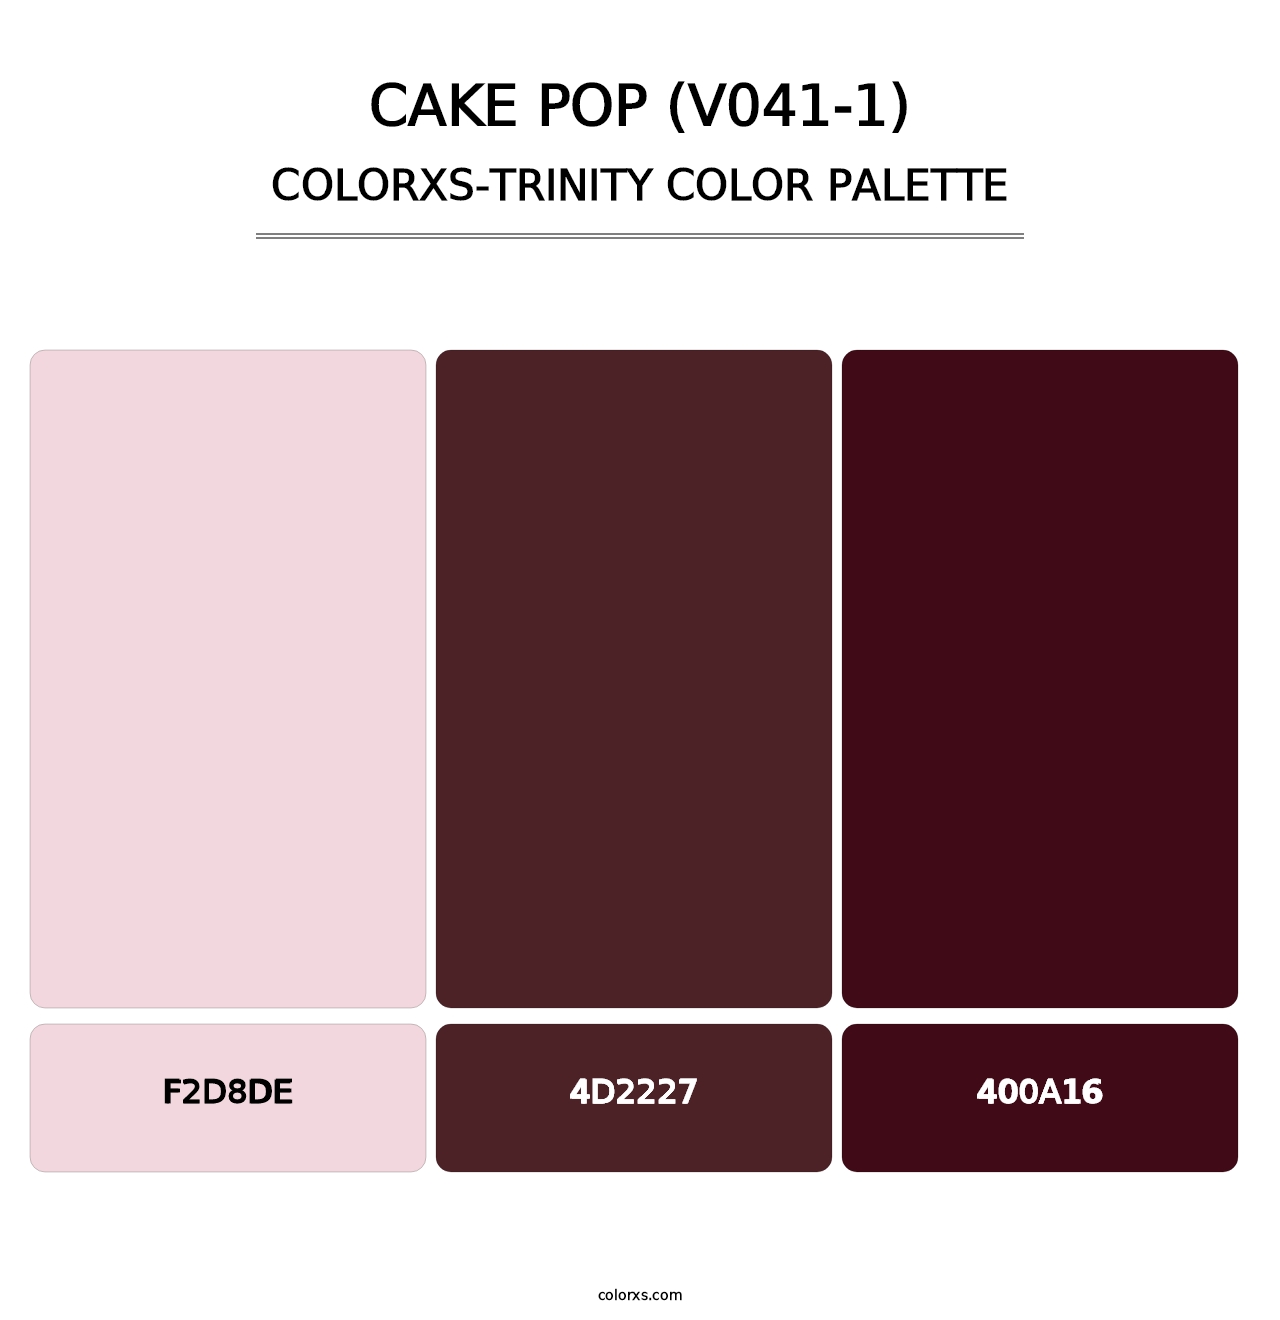 Cake Pop (V041-1) - Colorxs Trinity Palette